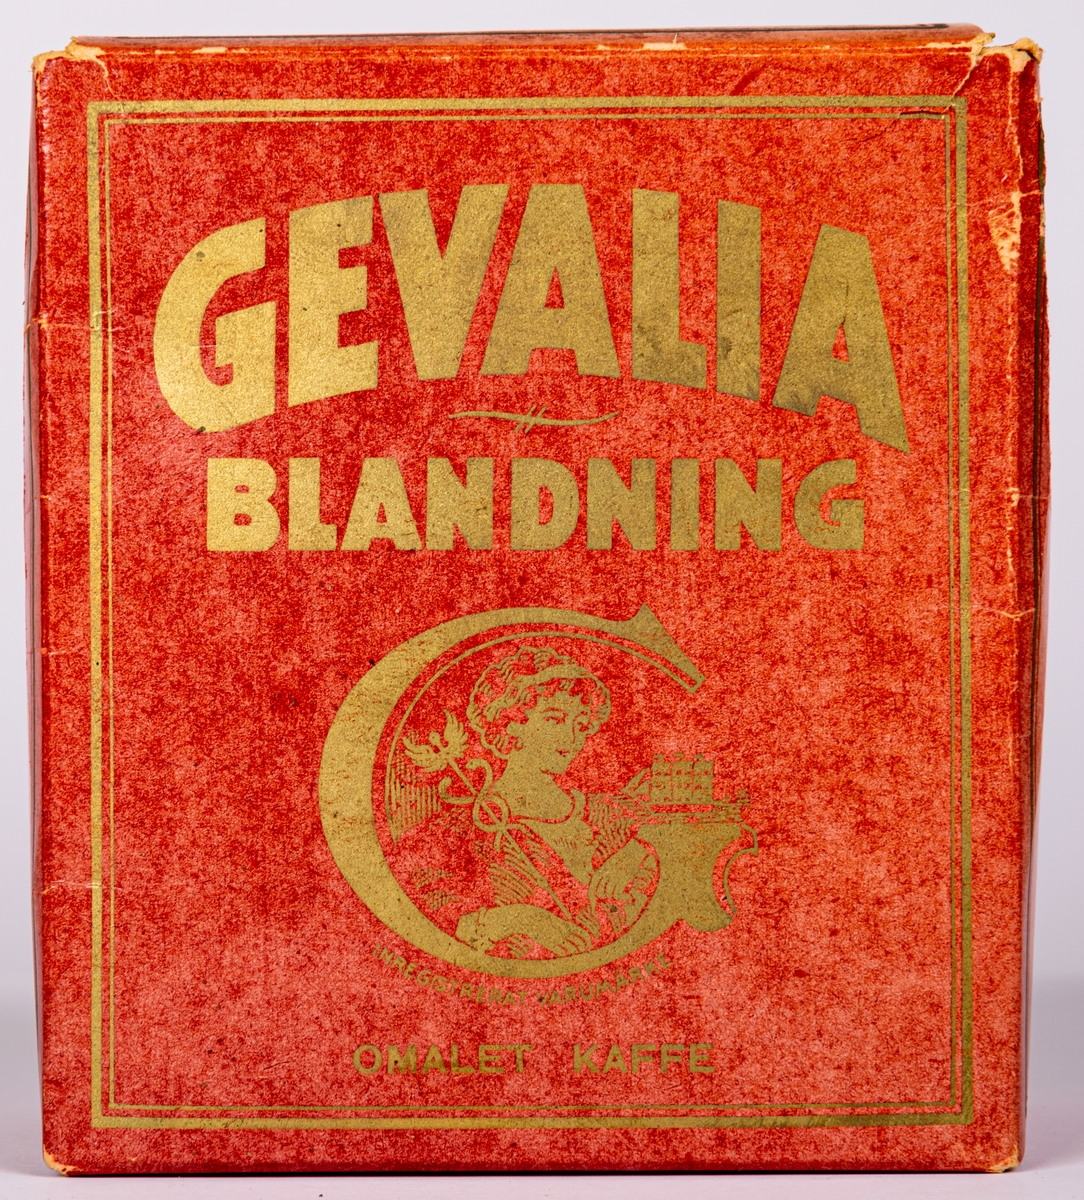 Kaffepaket Gevalia Blandning, Omalet kaffe.
Från Vict.Th.Engwall& co Kommanditbolag, Gefle.